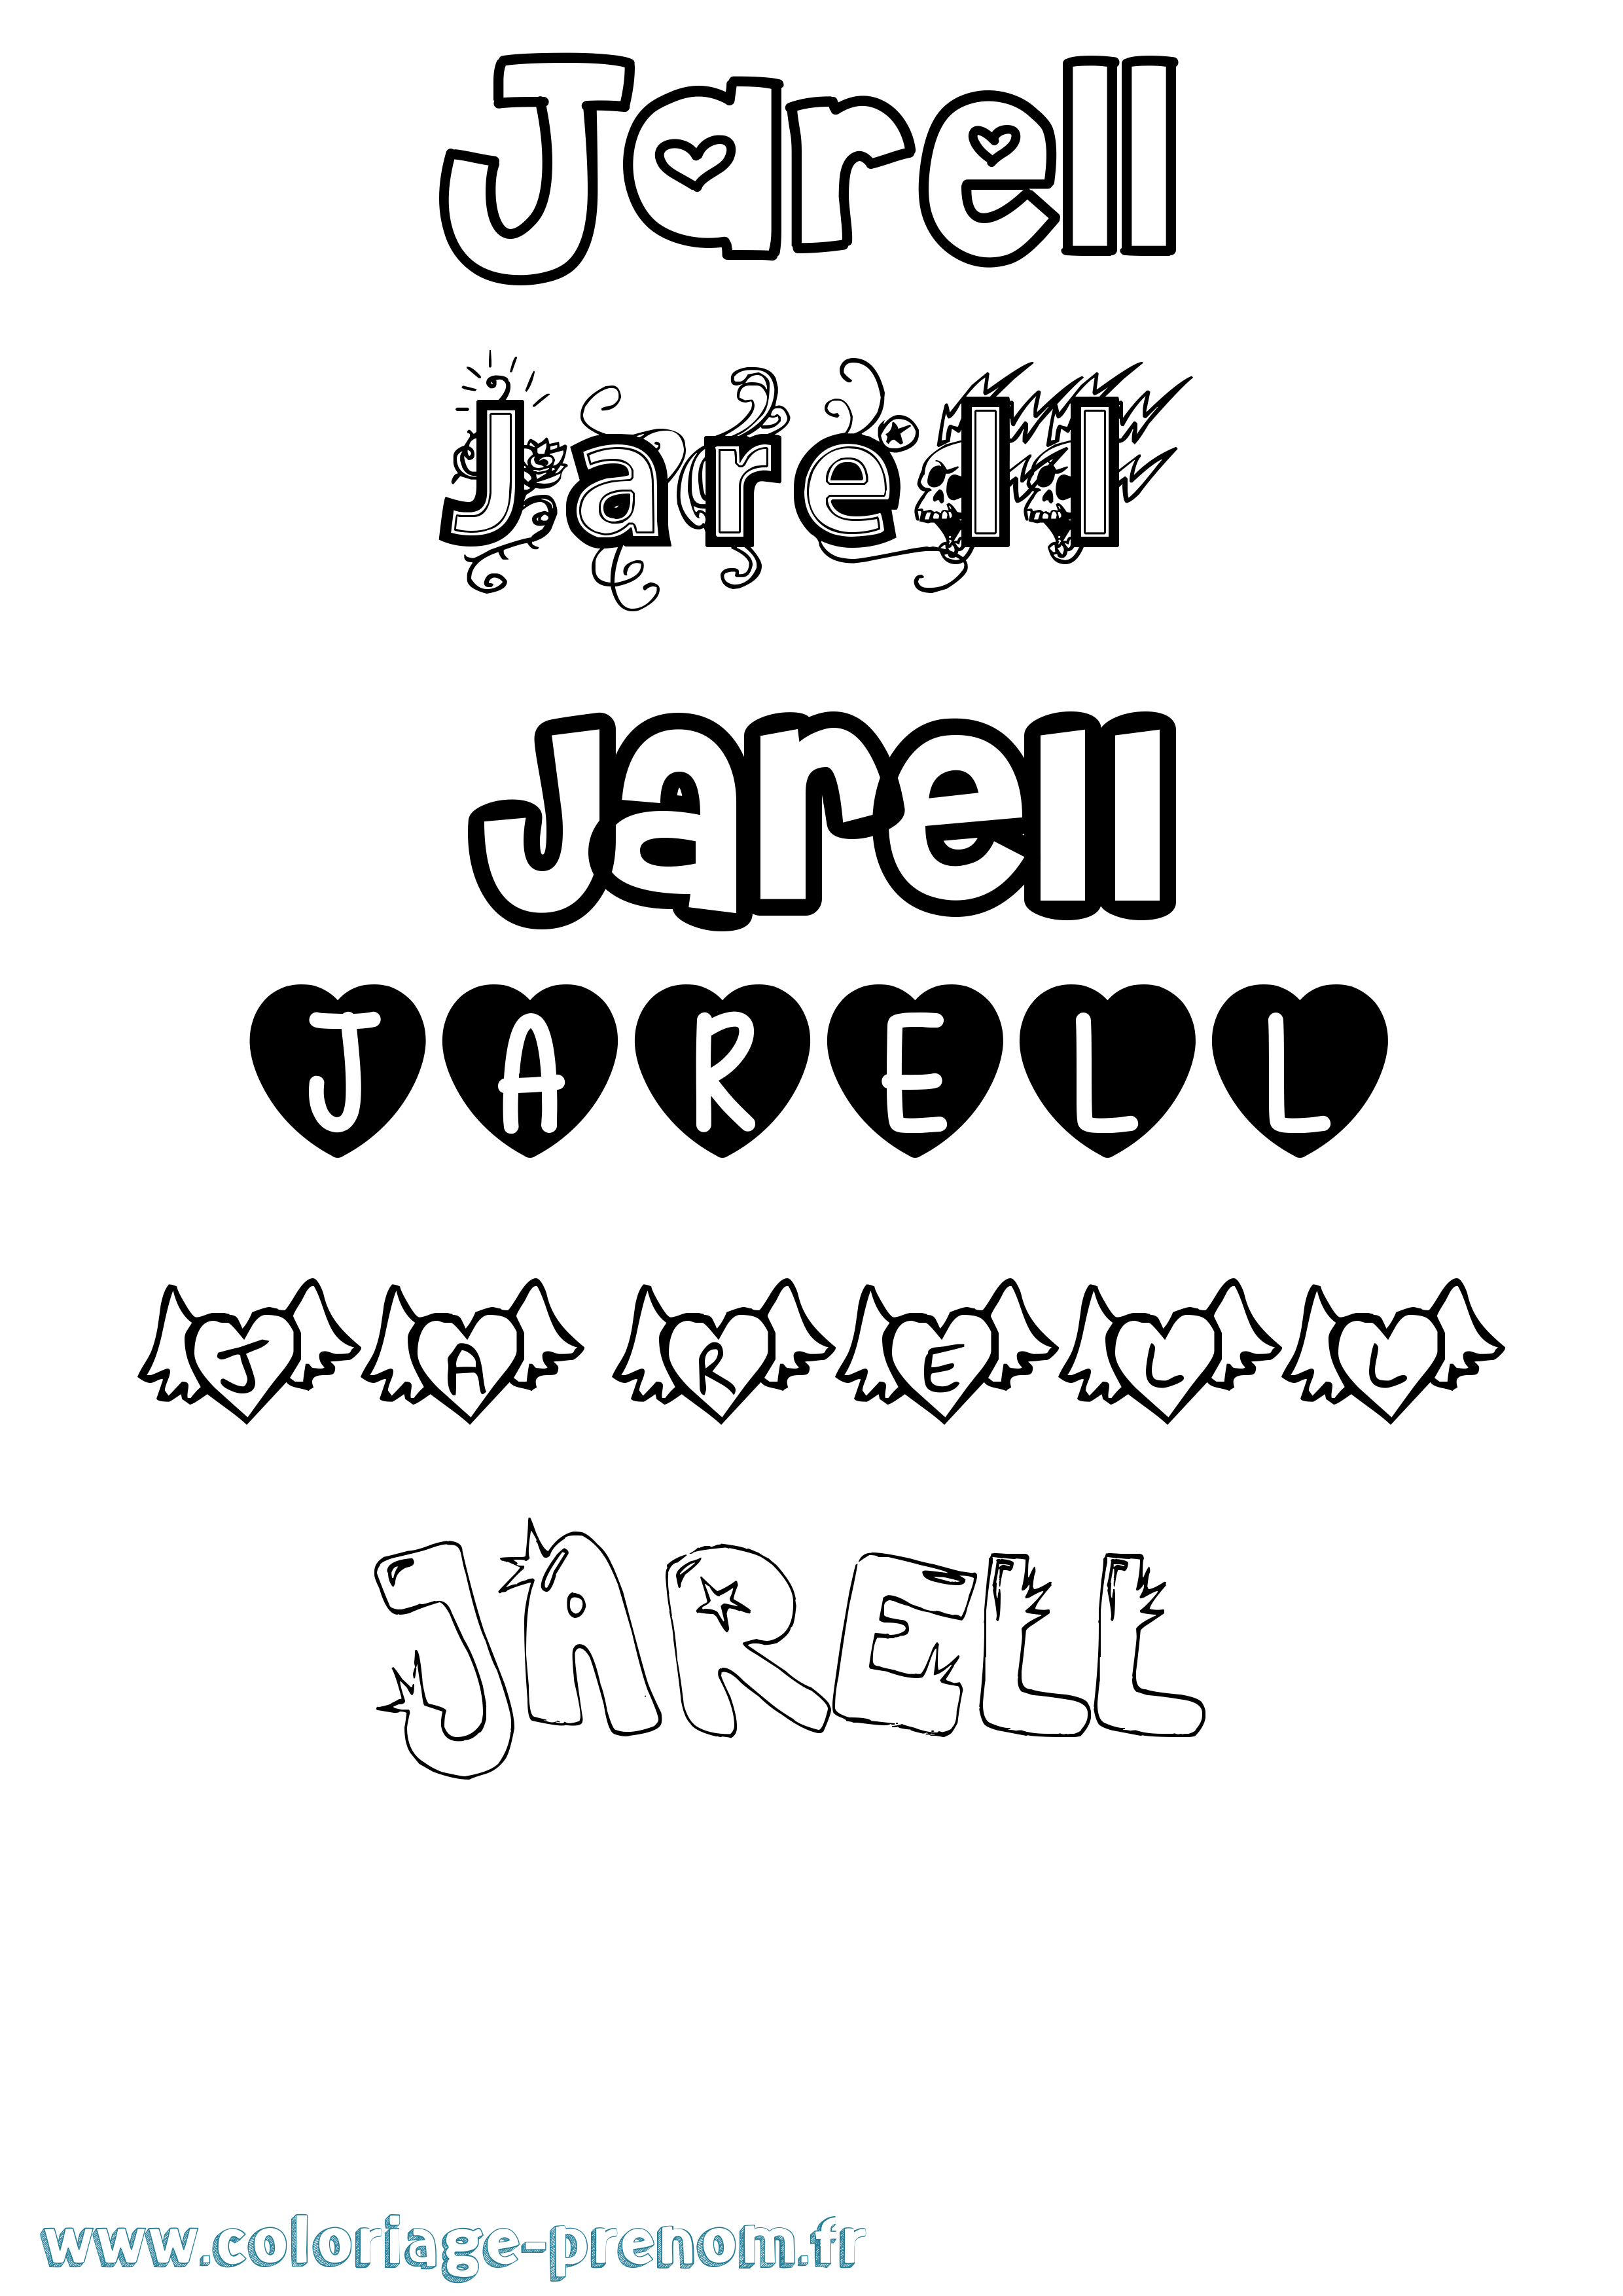 Coloriage prénom Jarell Girly